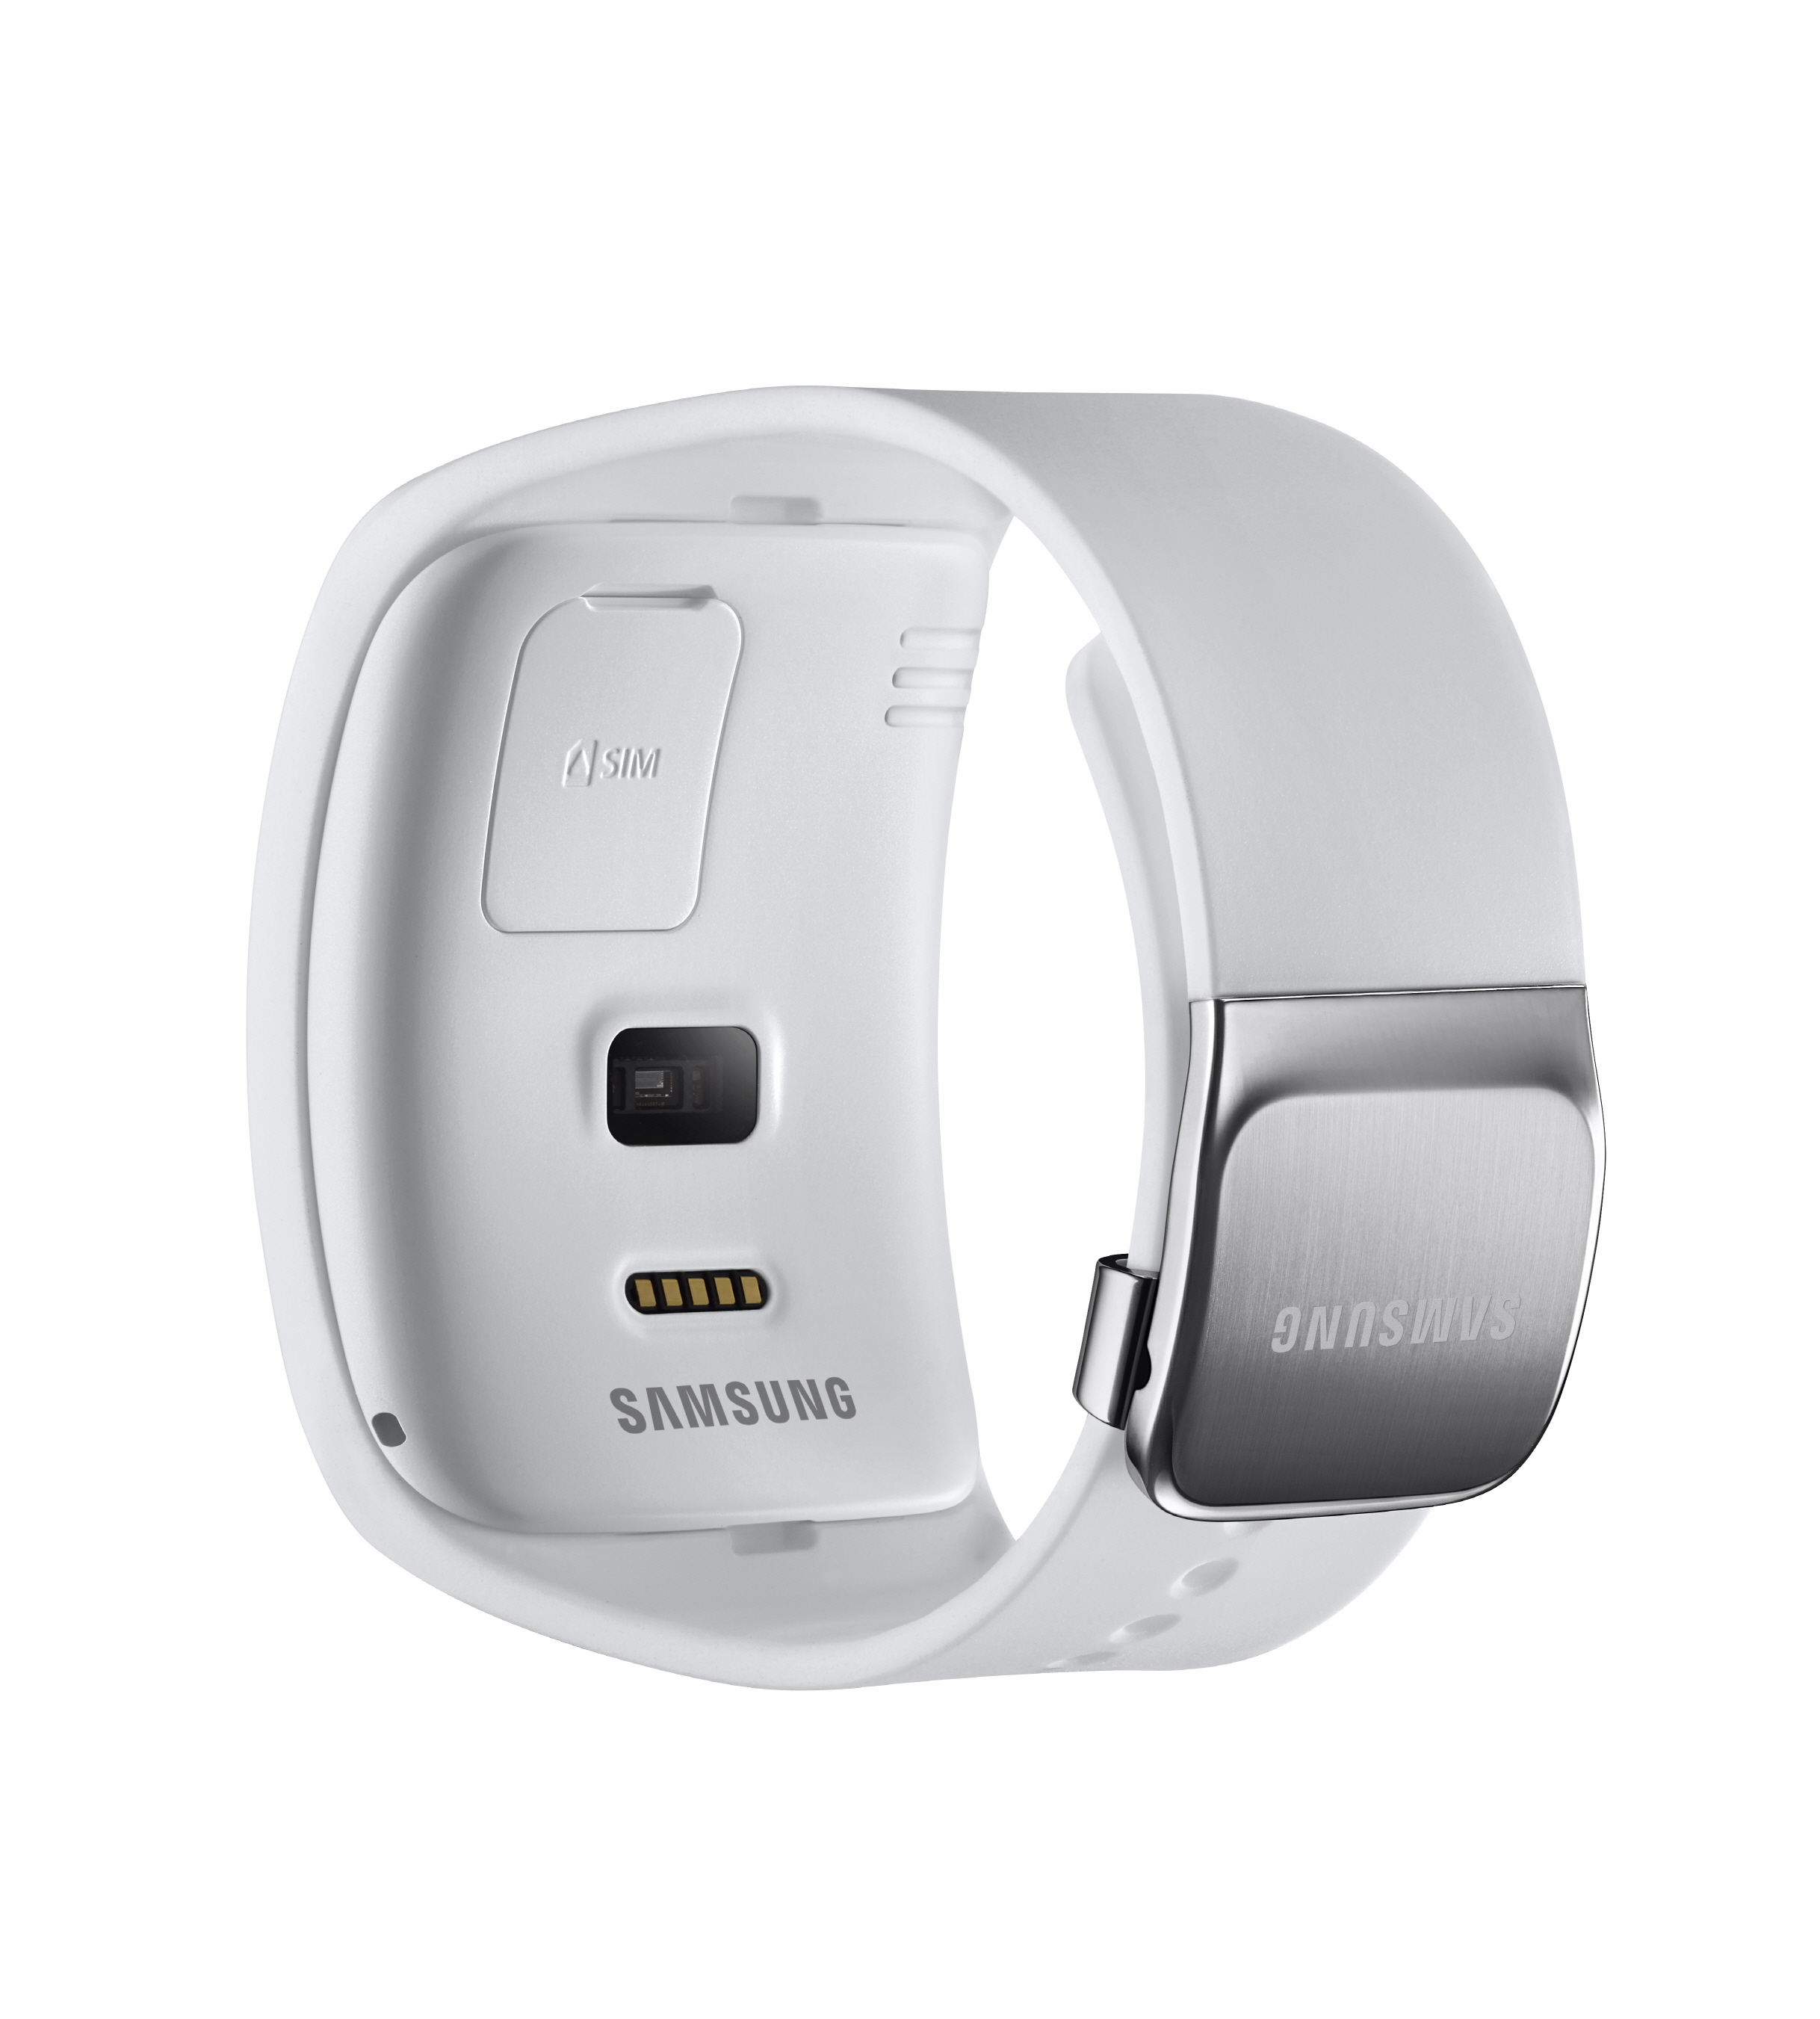 Samsung apresenta Guear S, sua nova geração de smartwatches